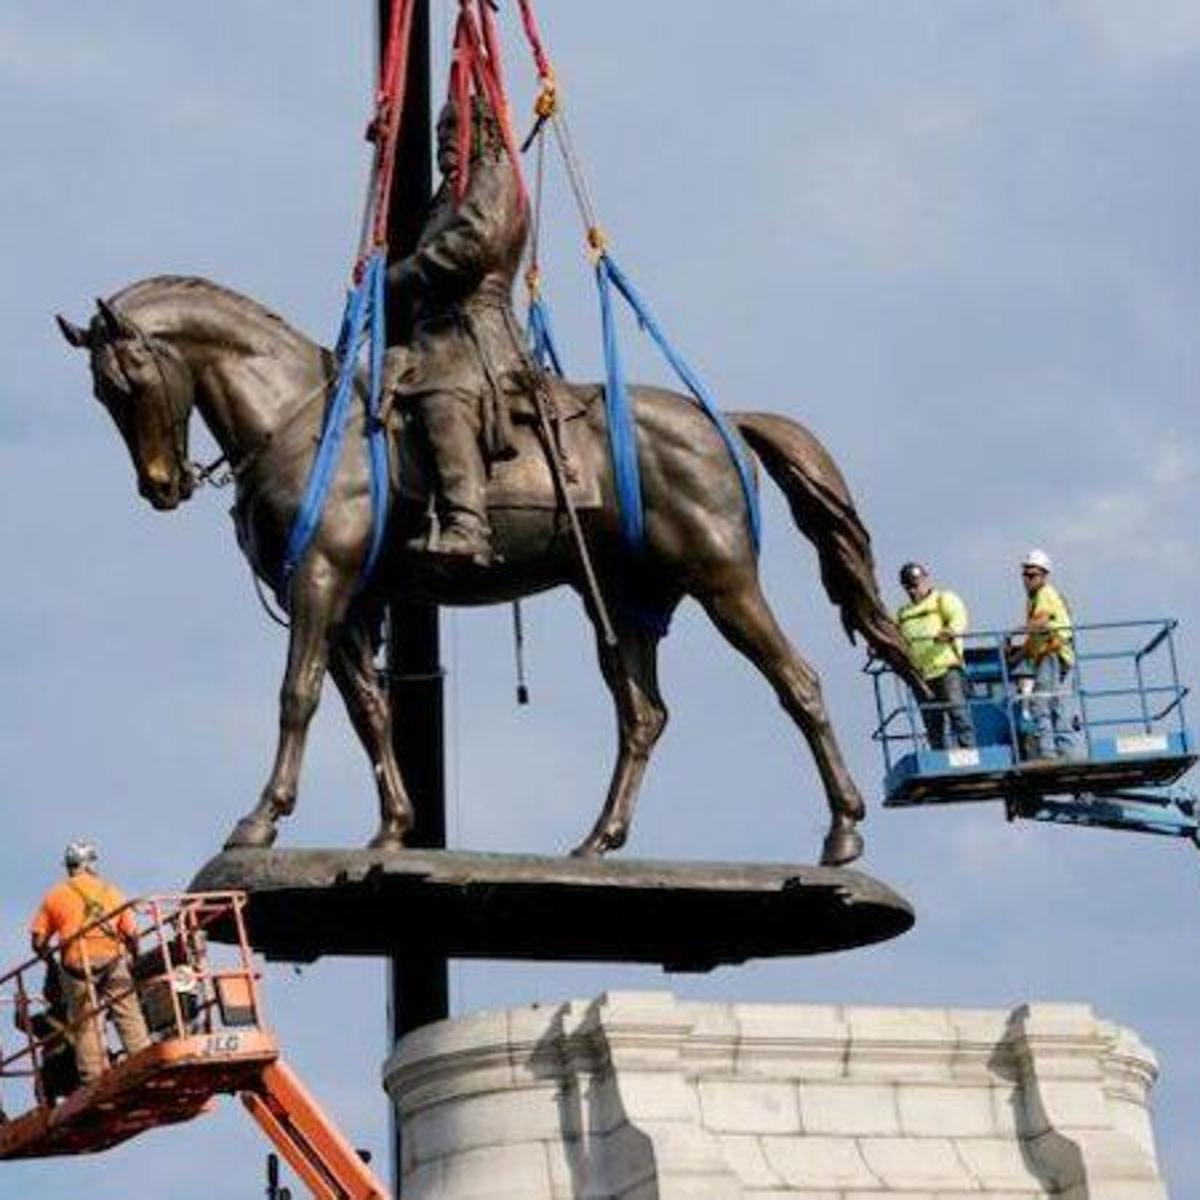 La estatua fue retirada debido a las protestas raciales.